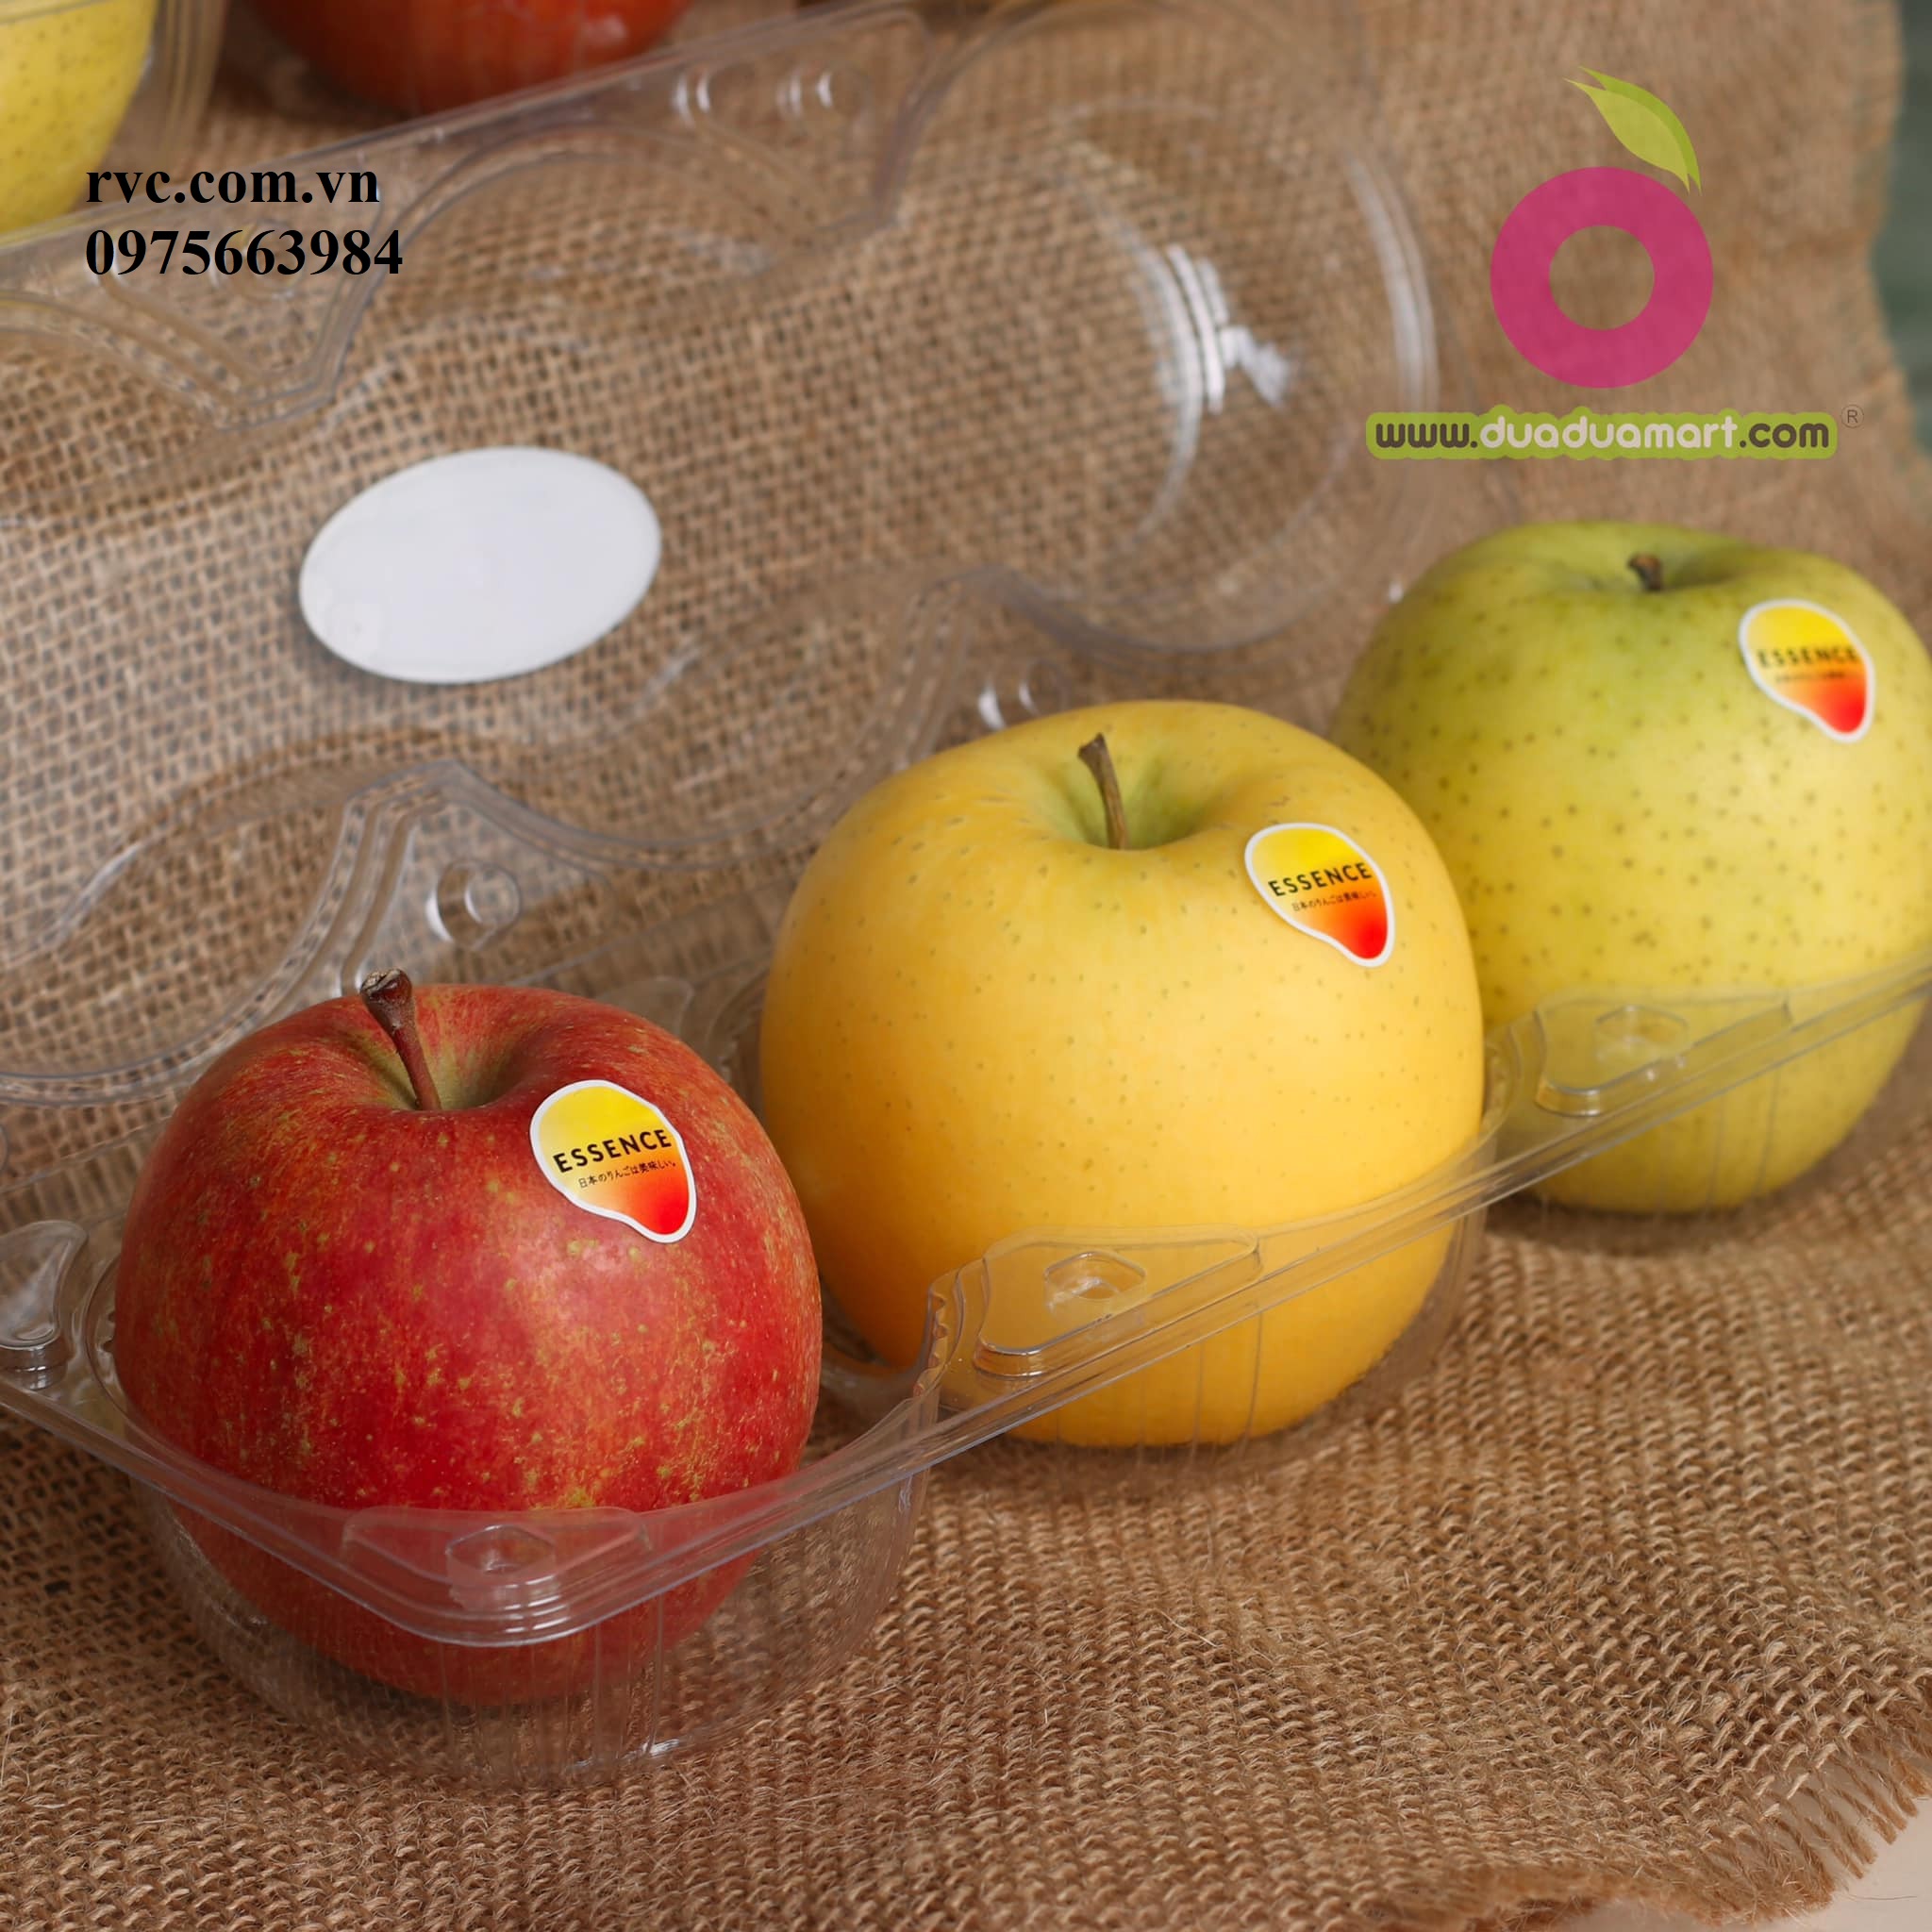 Hộp nhựa đựng 3 trái táo, cam, lê phổ biến thị trường hiện nay.